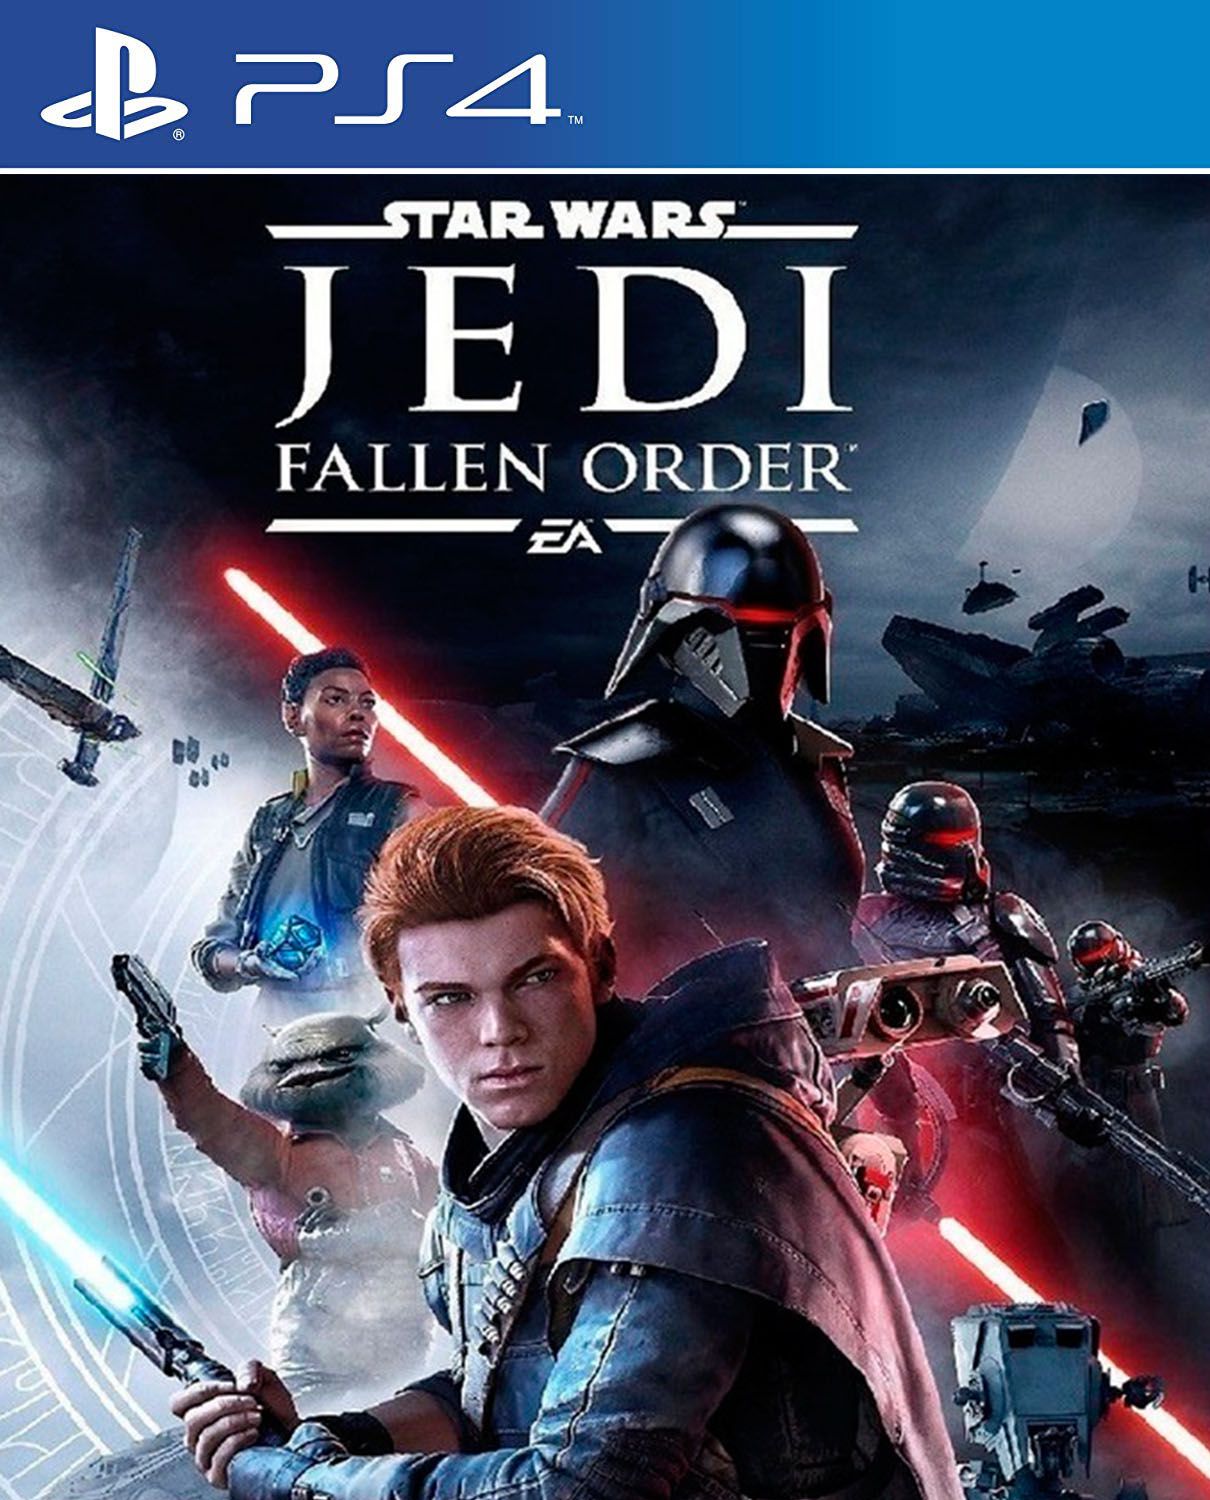 How long is Star Wars Jedi Fallen Order?